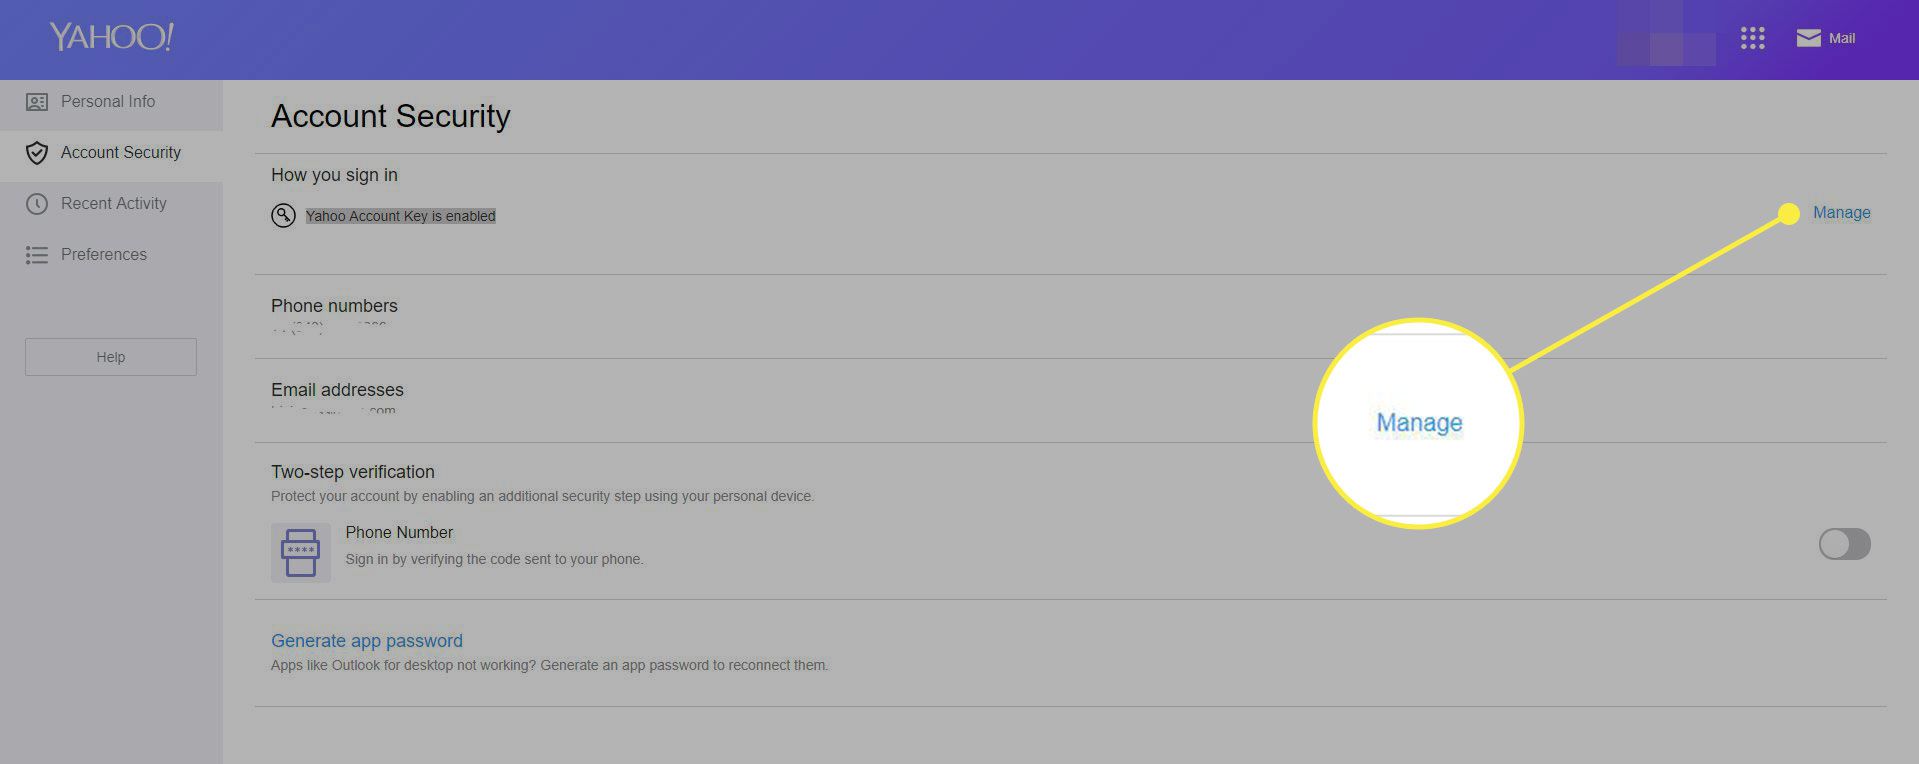 En skärmdump av Yahoo Mails kontosäkerhetsskärm med länken Hantera markerad